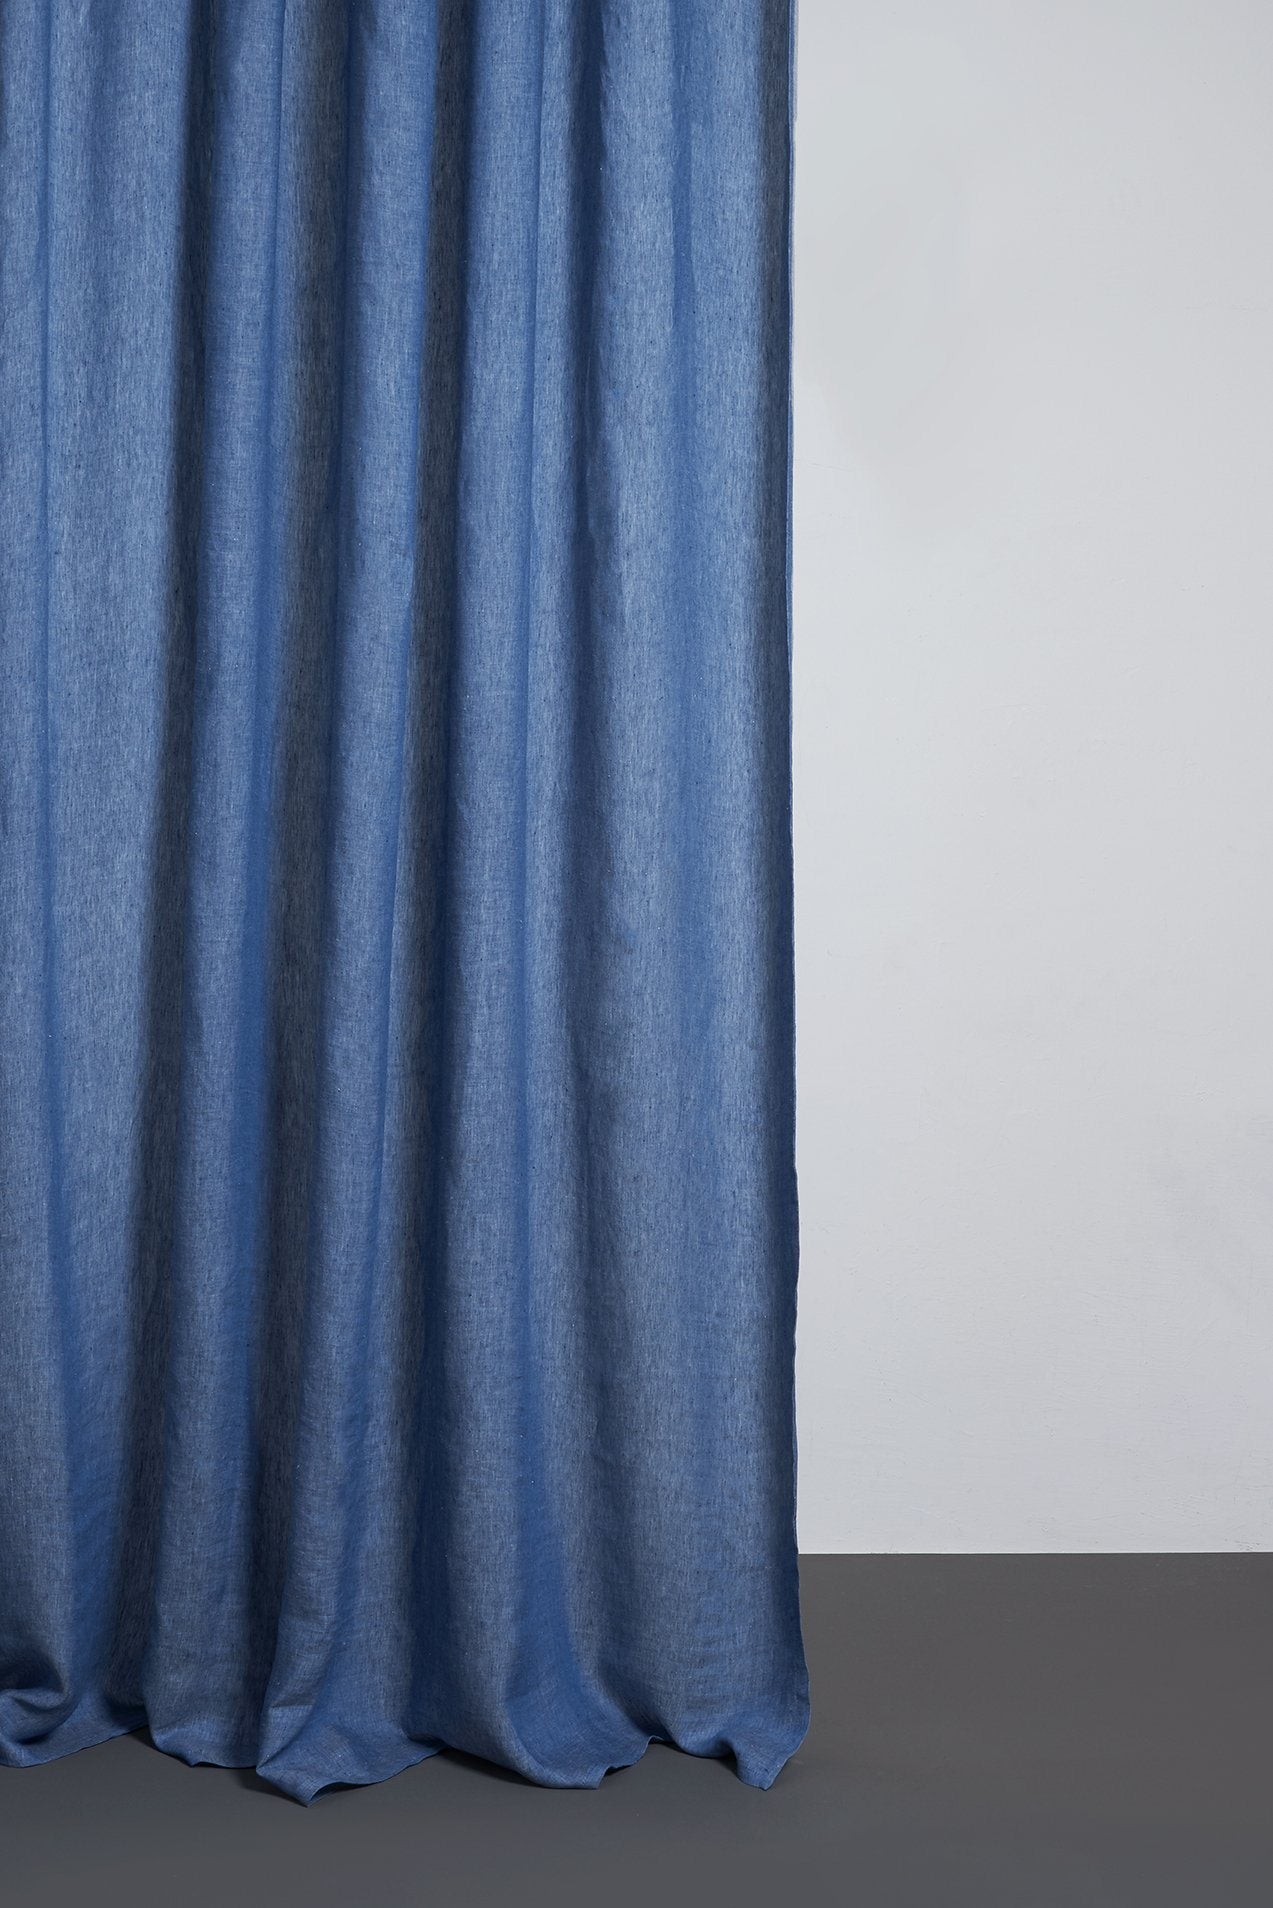 Two Tone Vorhang Stonewashed in Blau präsentiert im Onlineshop von KAQTU Design AG. Vorhang ist von ZigZagZurich